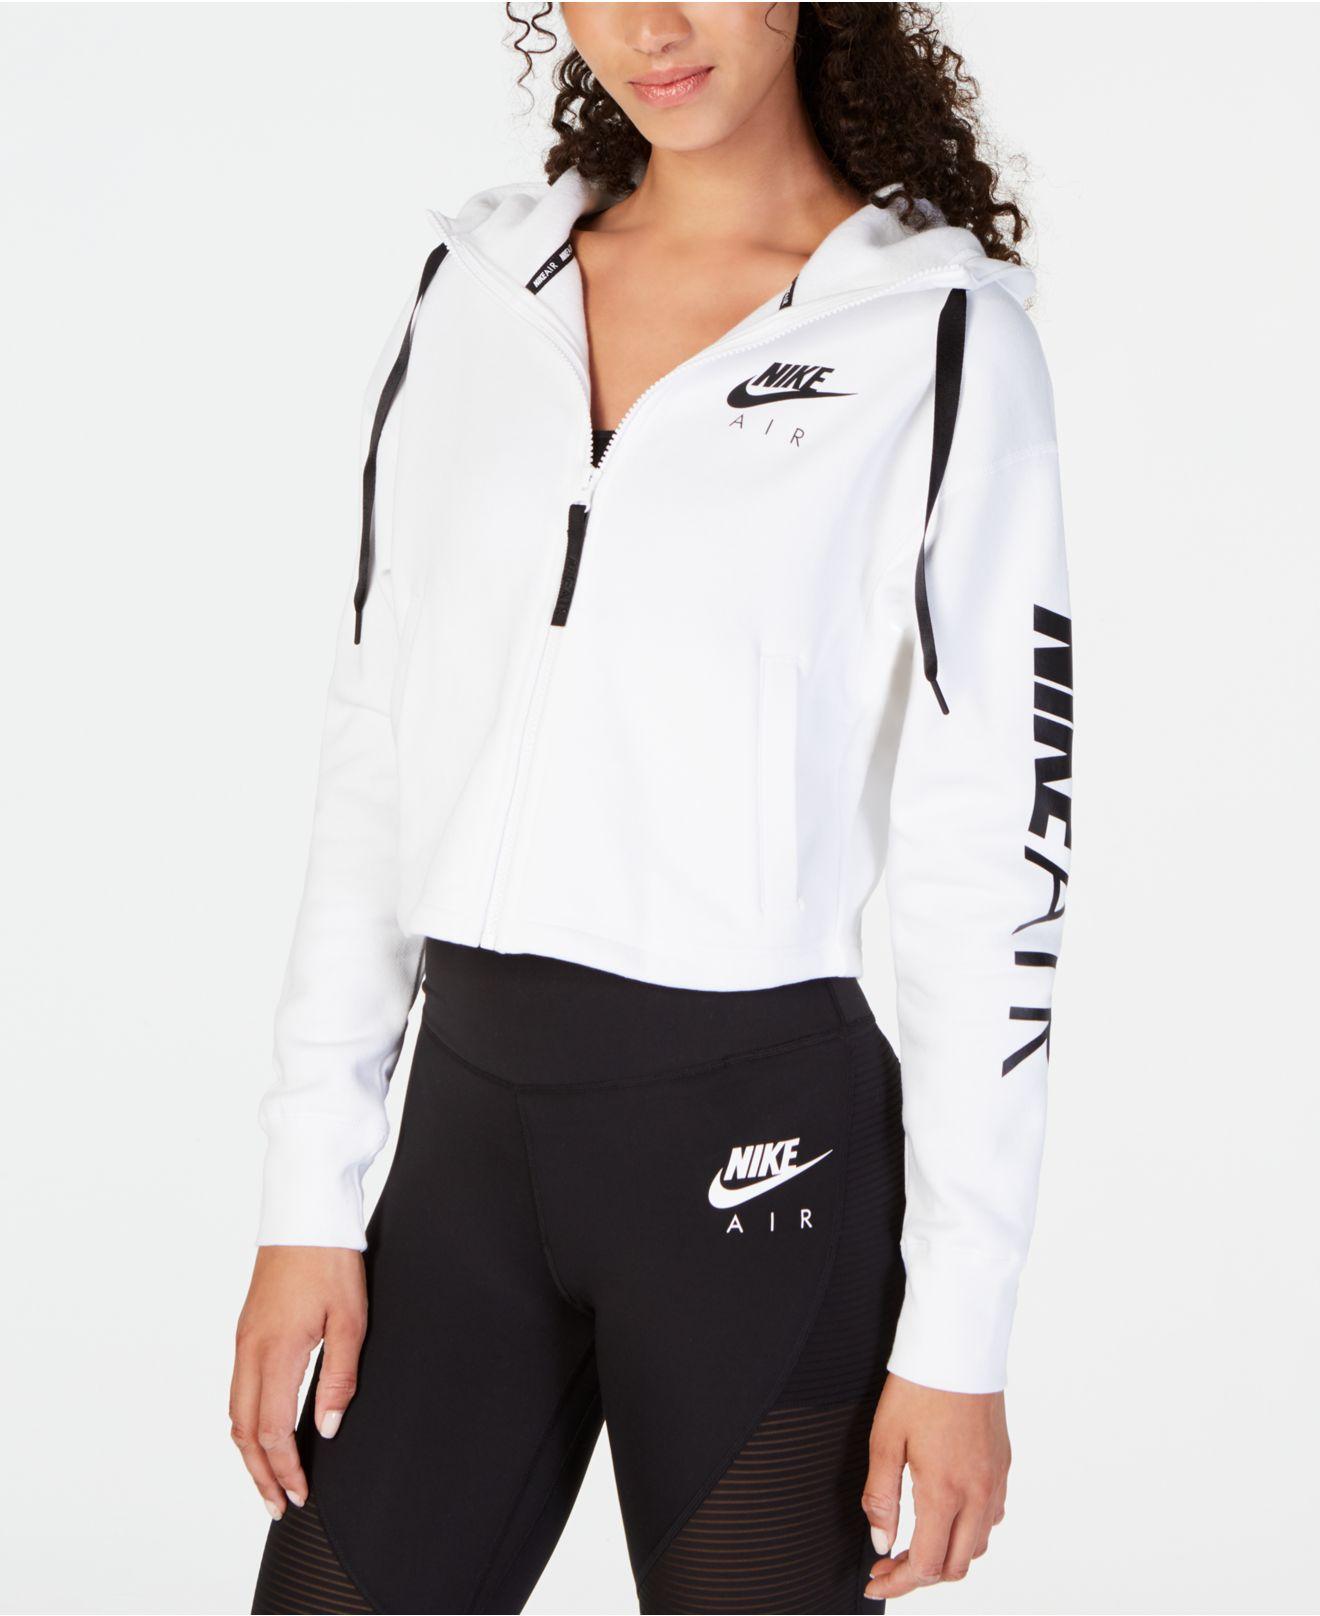 Nike Air Fleece Zip Cropped Hoodie in White & Black (White) | Lyst